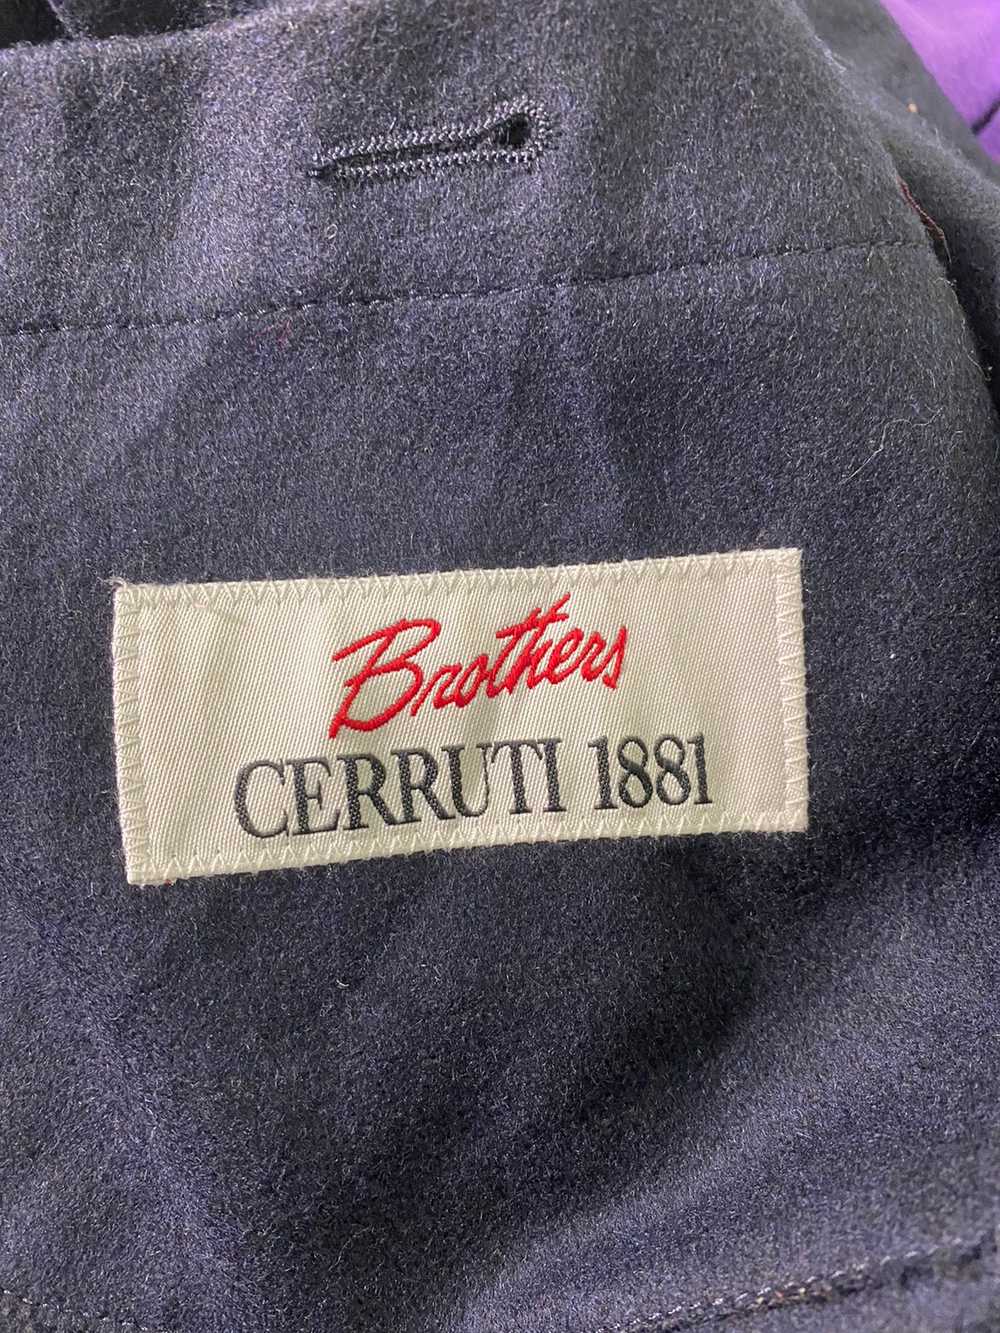 Cerruti 1881 - Brothers Cerruti 1881 Wool Jacket - image 4